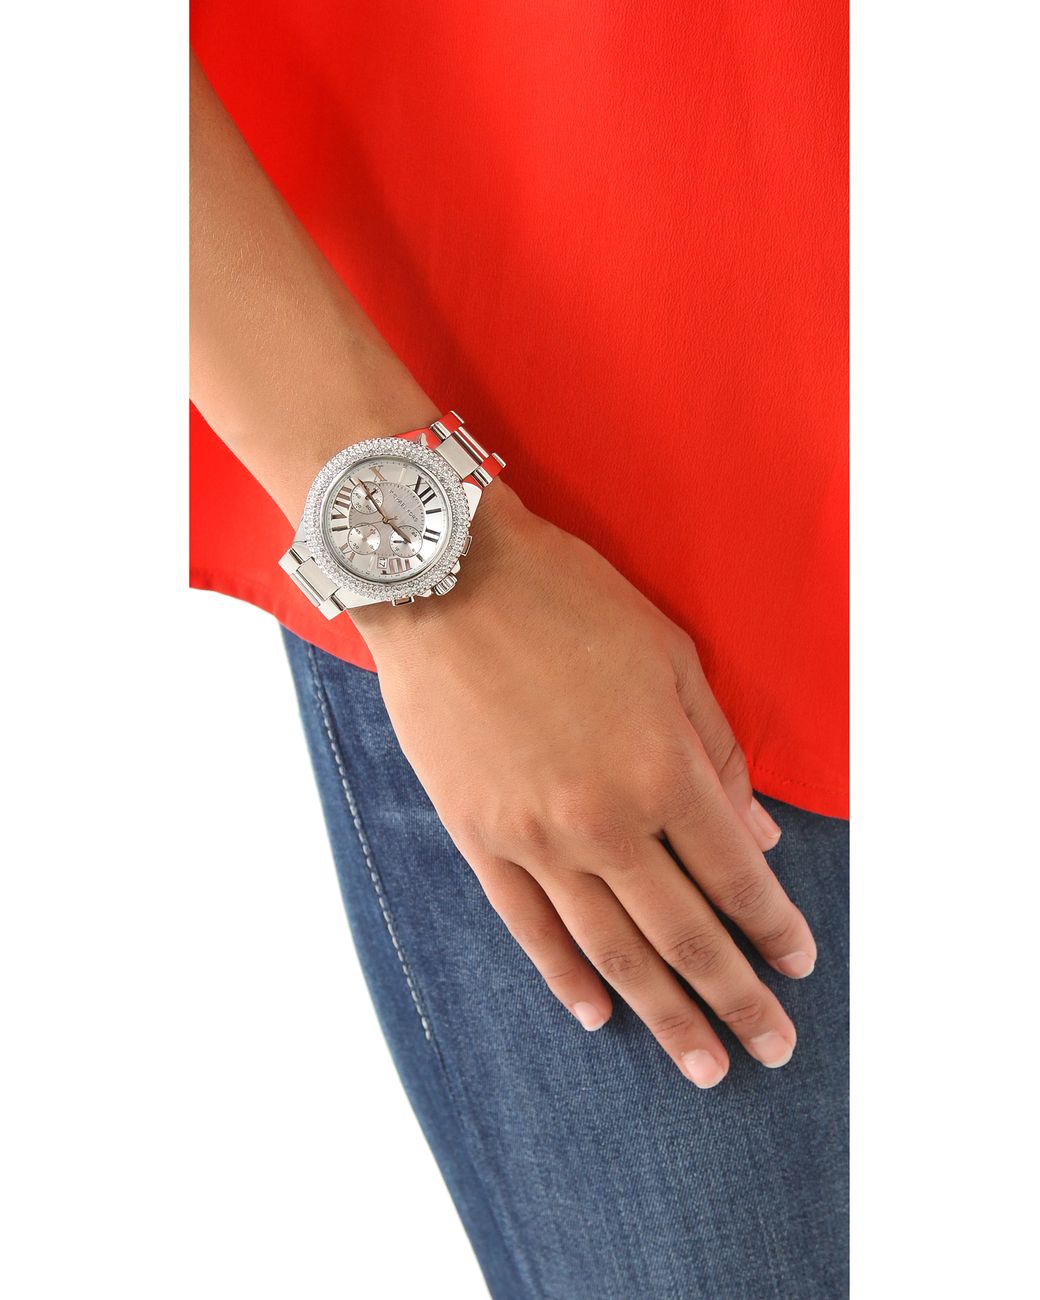 Michael Kors Glitz Rare Parker Chronograph Womens Watch MK5275 xách tay  chính hãng giá rẻ bảo hành dài  Đồng hồ nữ  Senmix